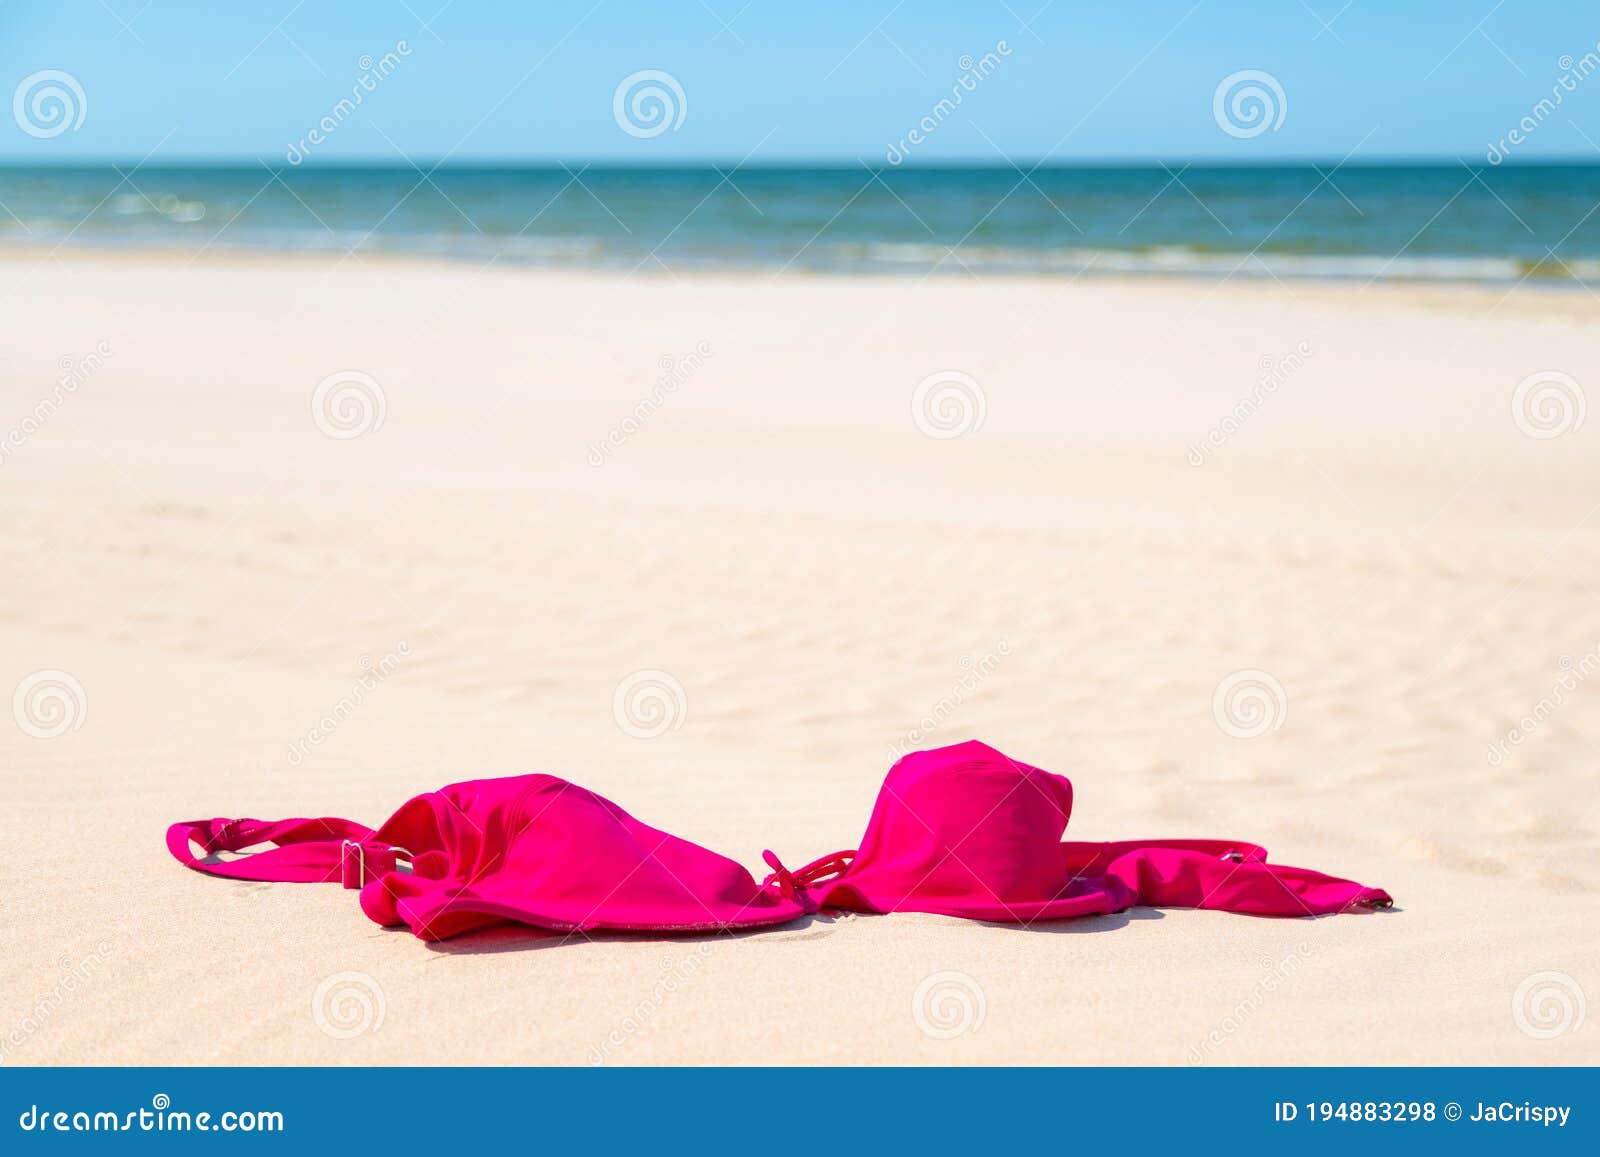 海边沙滩上的美女，颜值很高哦。